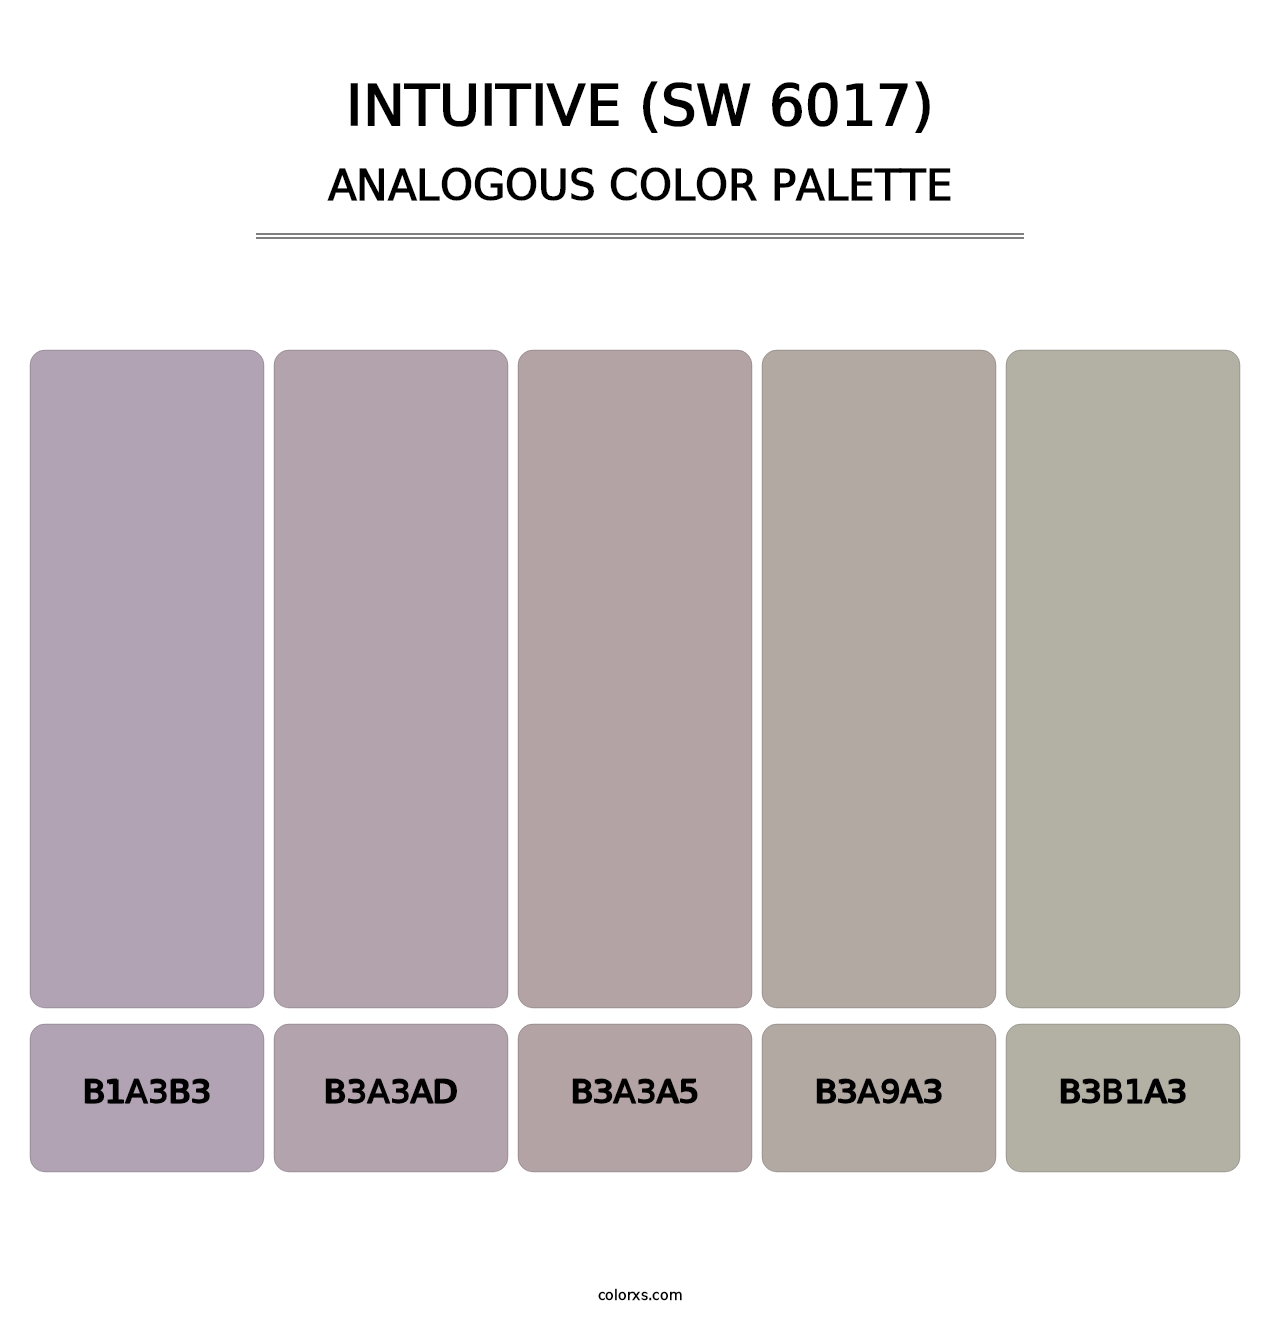 Intuitive (SW 6017) - Analogous Color Palette